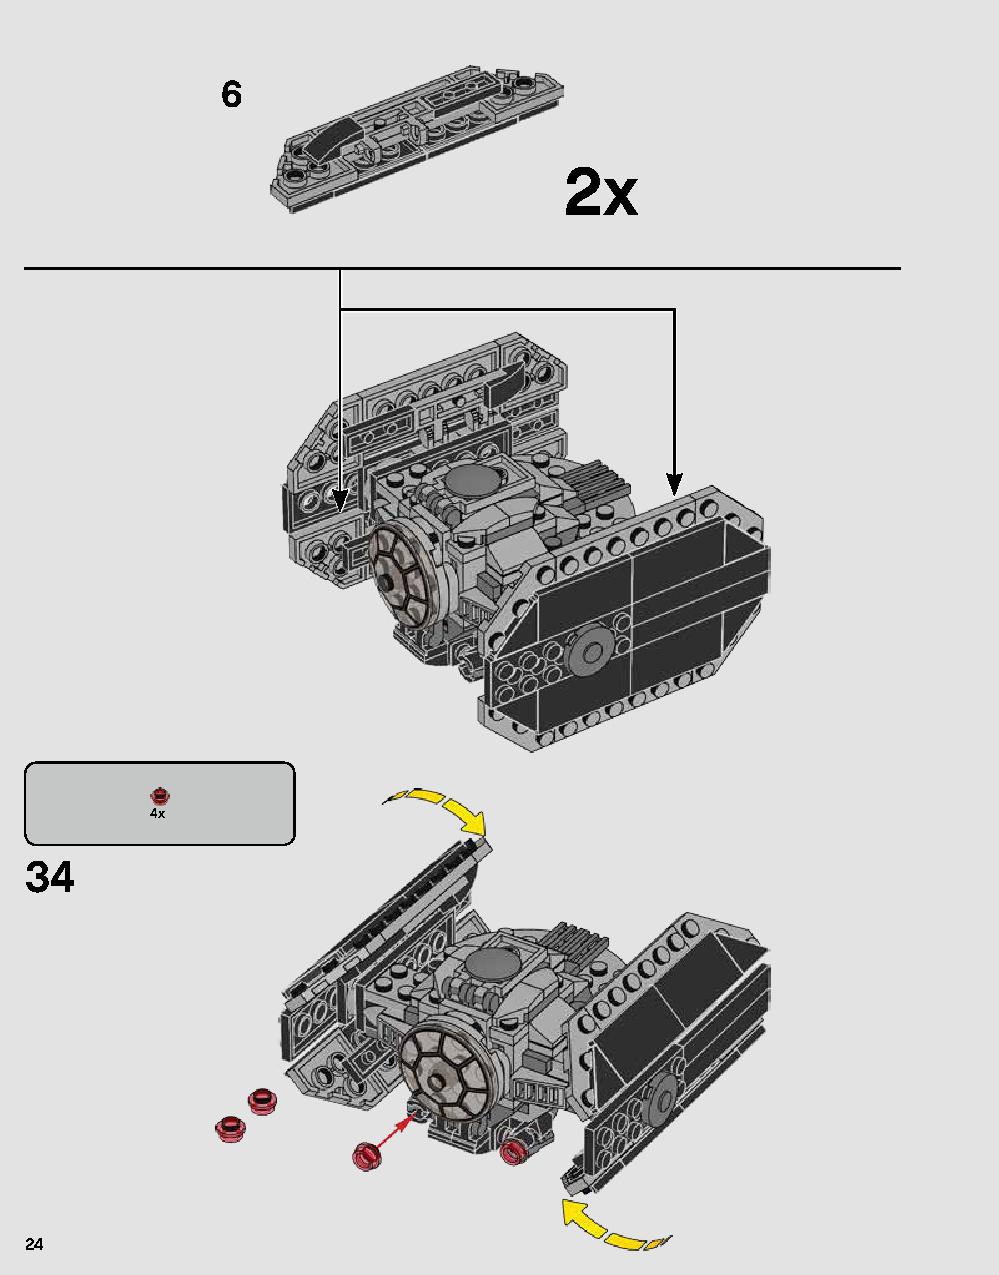 ダース・ベイダーの城 75251 レゴの商品情報 レゴの説明書・組立方法 24 page